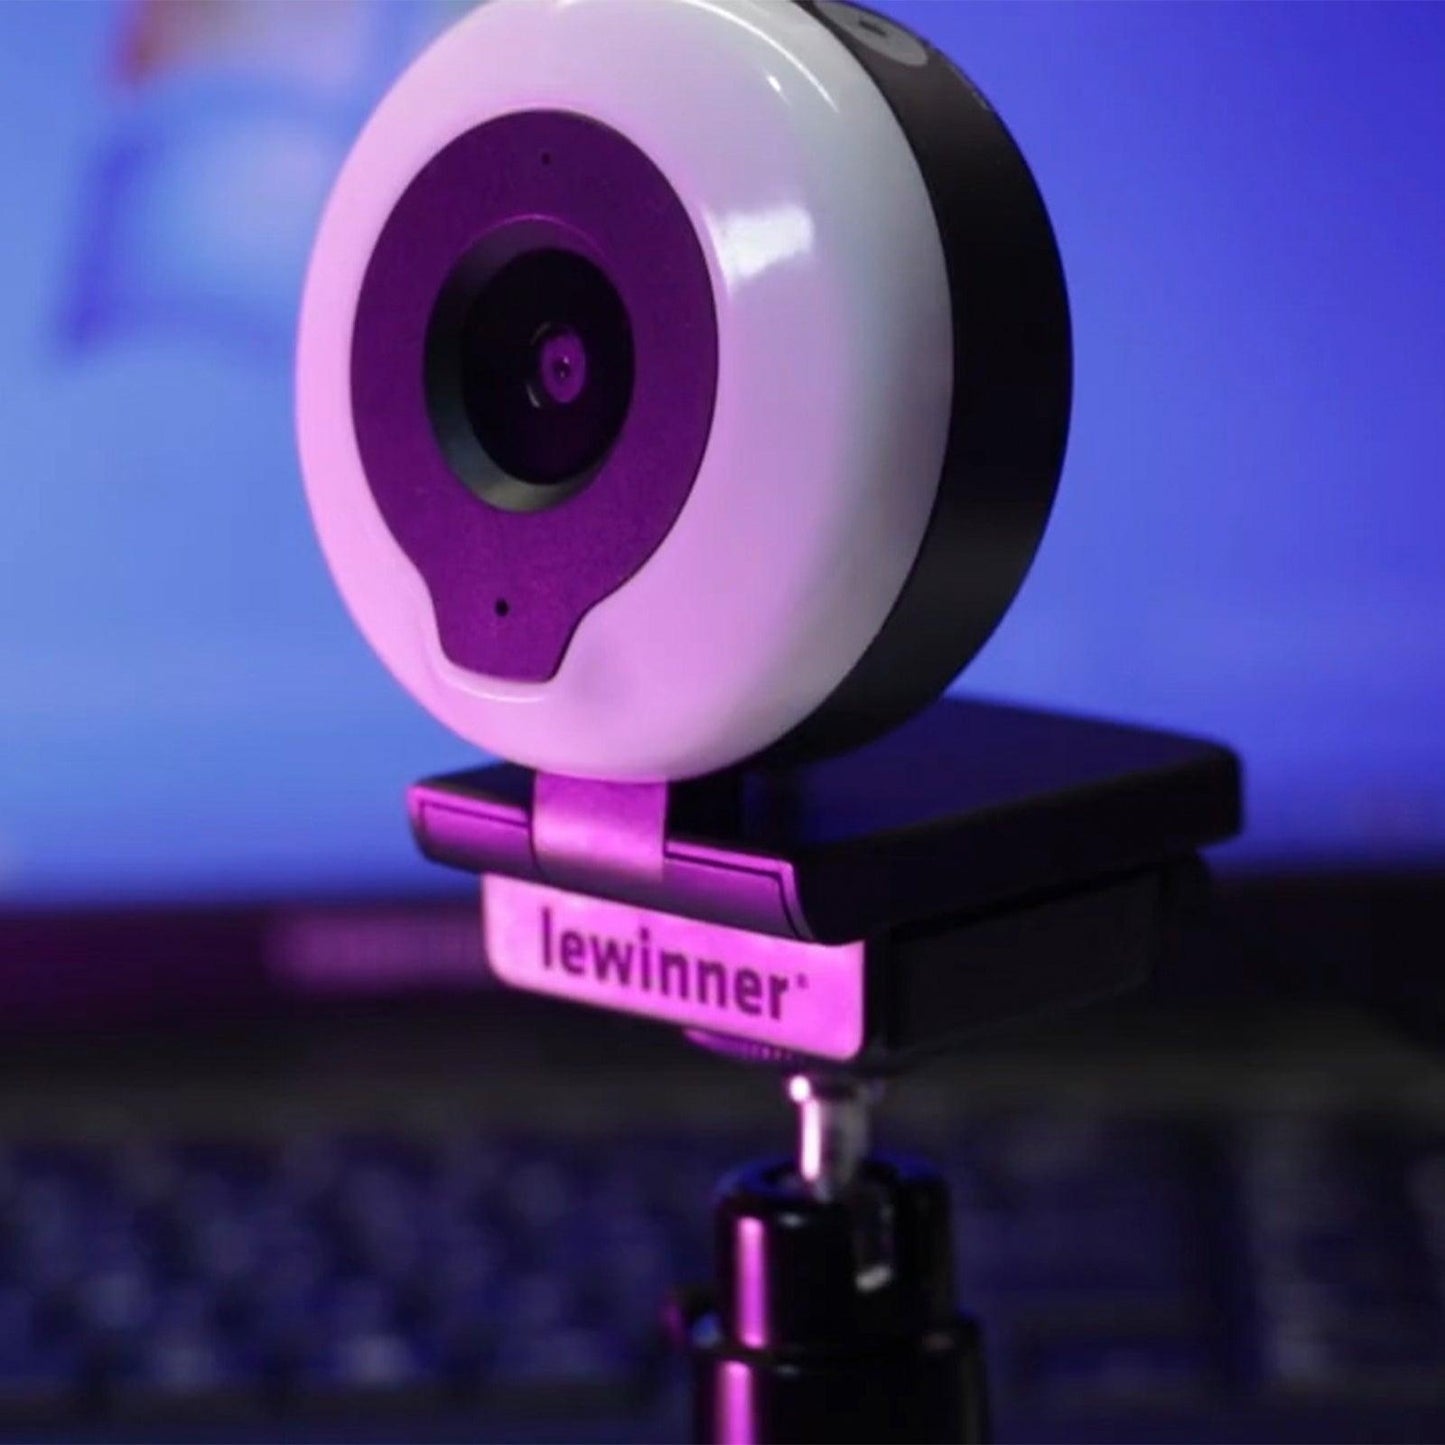 Lewinner 2K Webcam